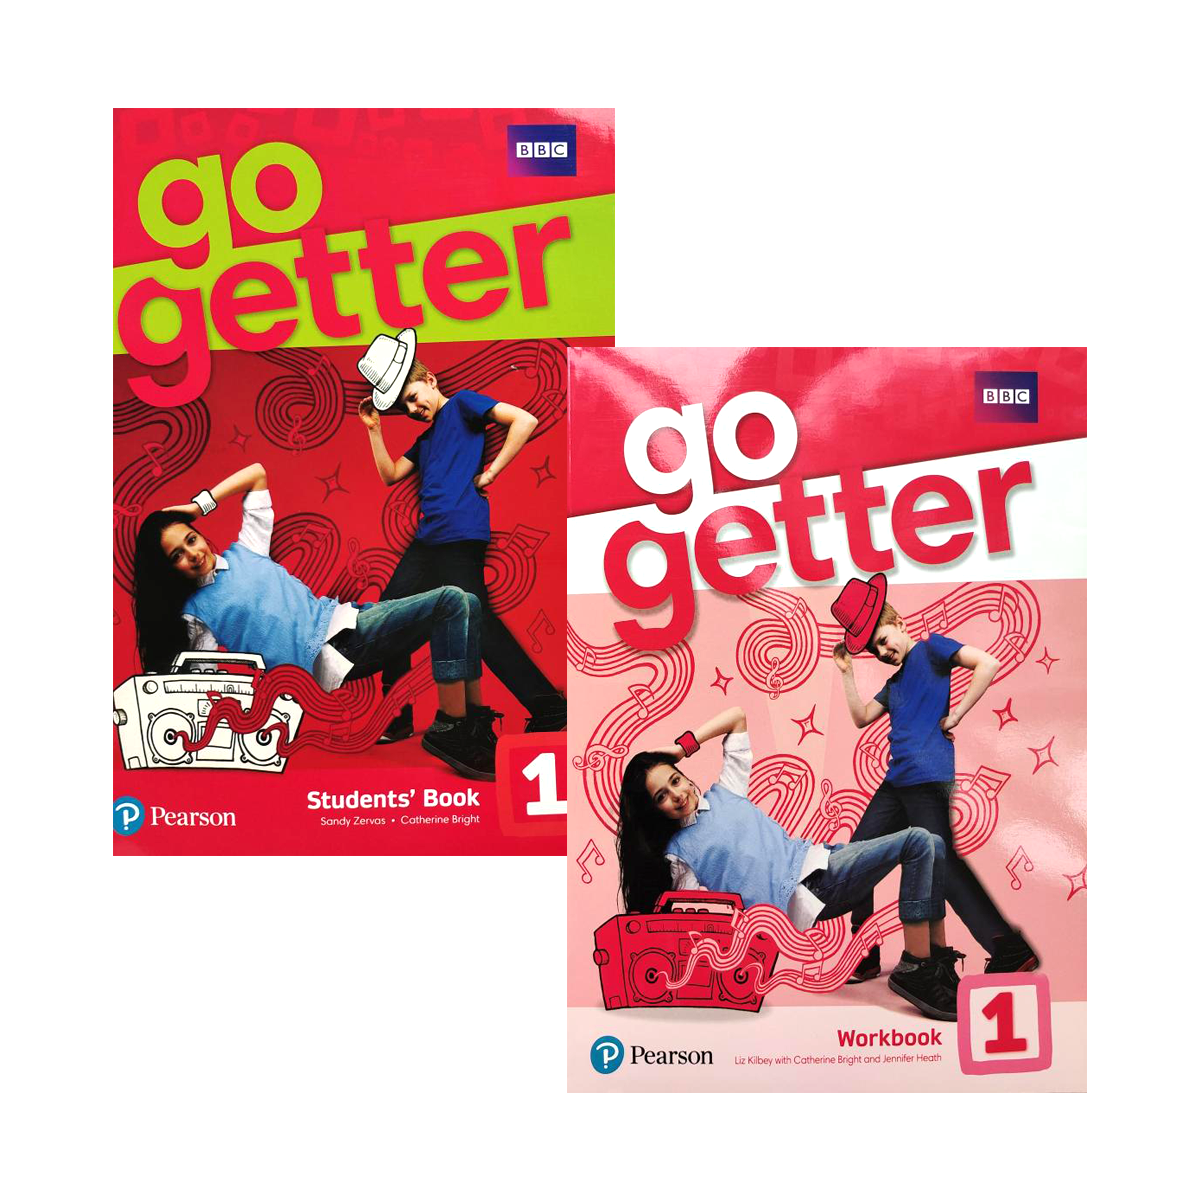 Go getter английский workbook ответы. Go Getter 1. Учебник go Getter 1. Учебник Pearson go Getter. Go Getter 2 Workbook.